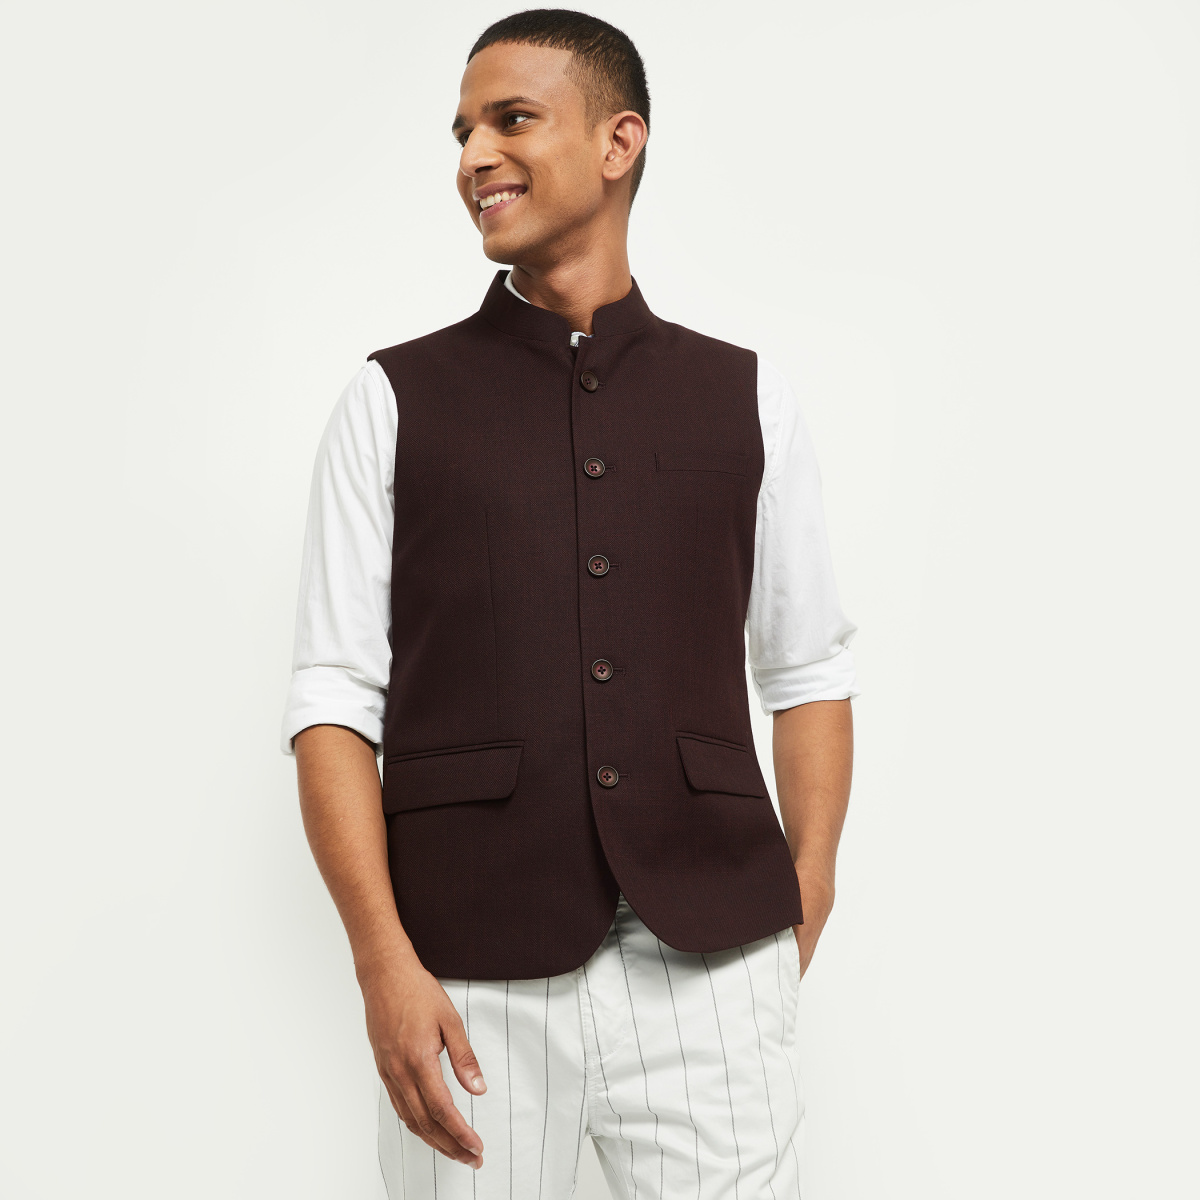 Buy Raas Men's Wine 100% Cotton Zipper Design Nehru Jacket at Amazon.in